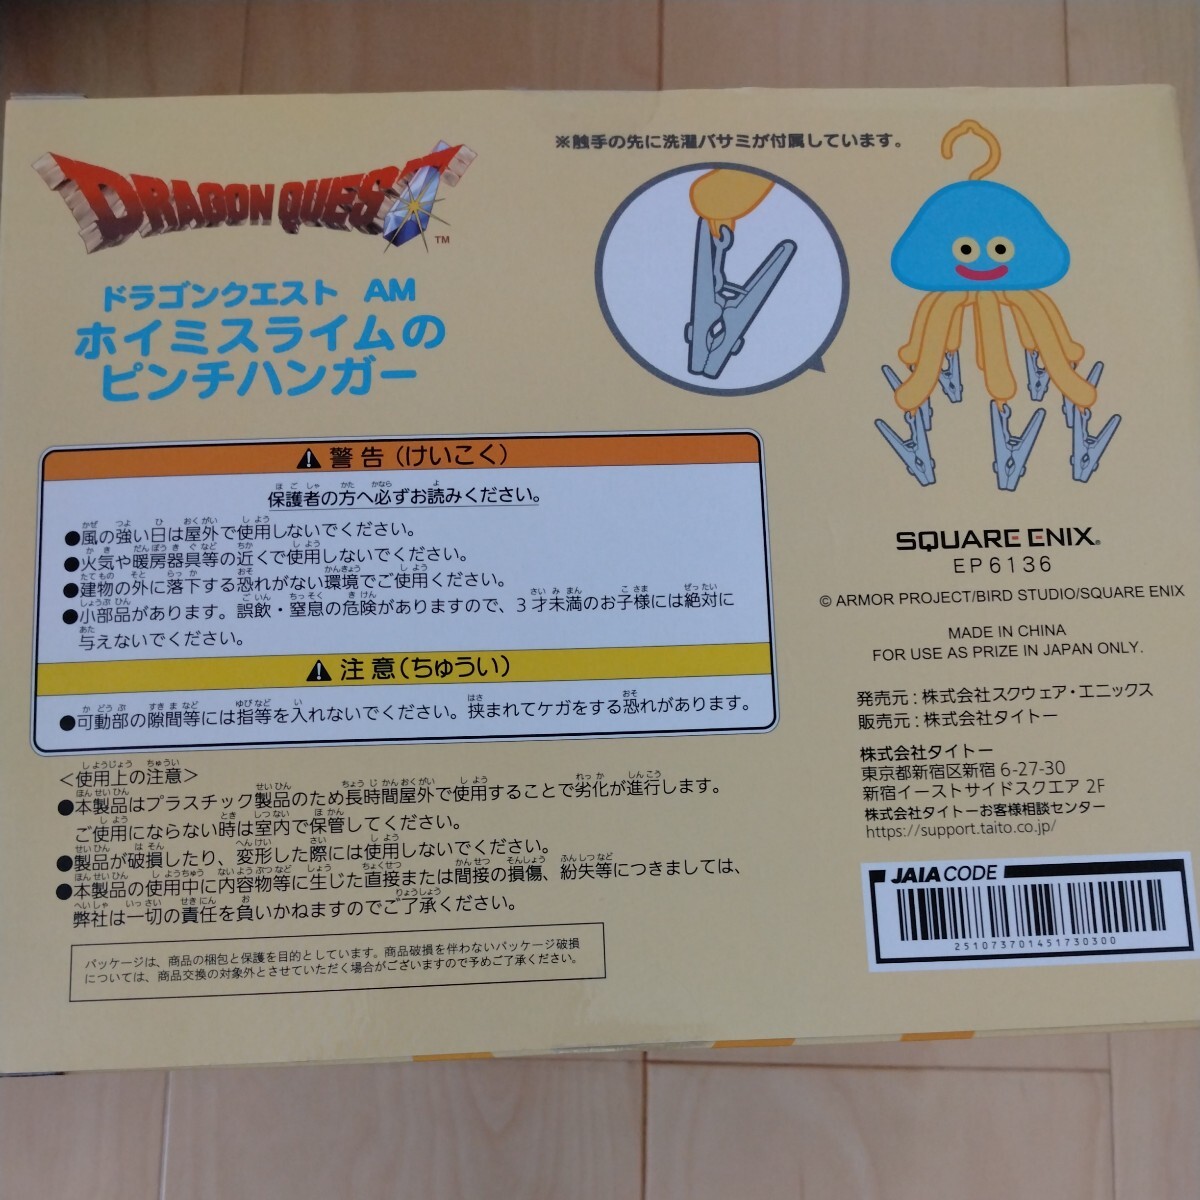 ( самый дешевый стоимость доставки, нестандартный винил пакет только 510 иен ) Dragon Quest ho imi Sly m. прищепка вешалка [ доставка в пояснительном примечании .] включение в покупку возможно 